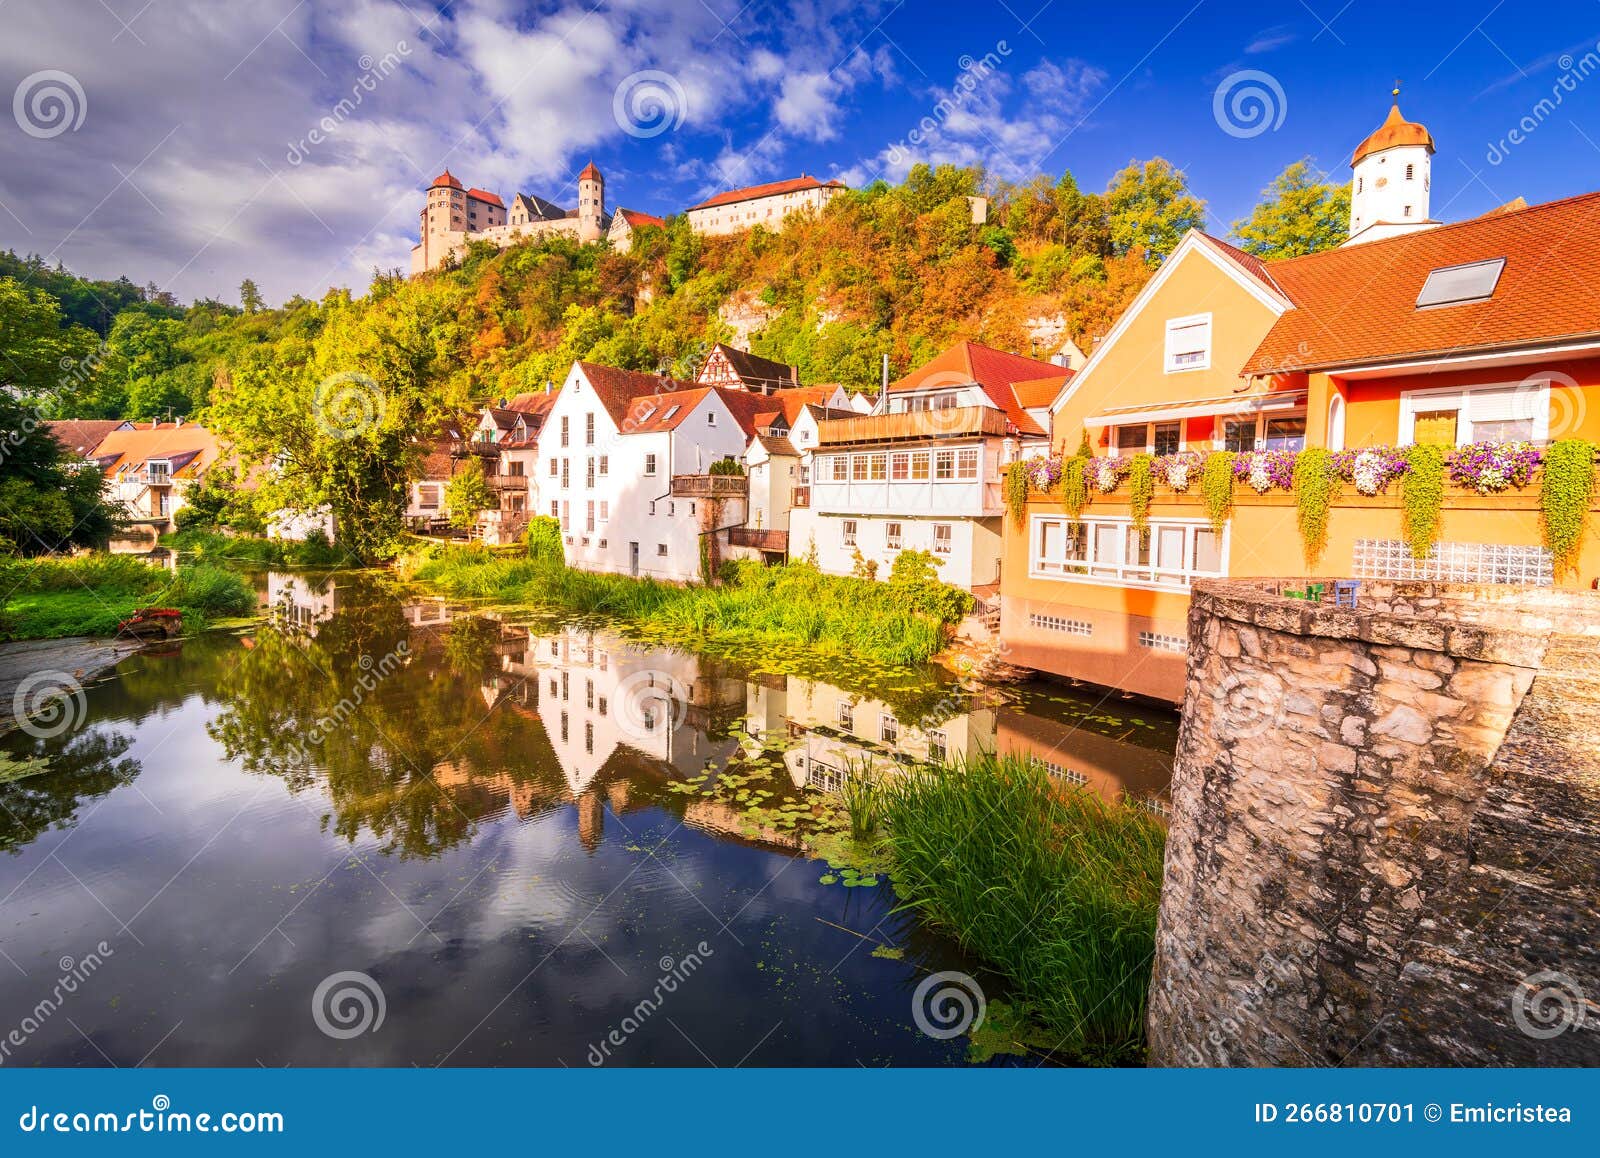 harburg, swabia. beautiful medieval village in historical bavaria, germany